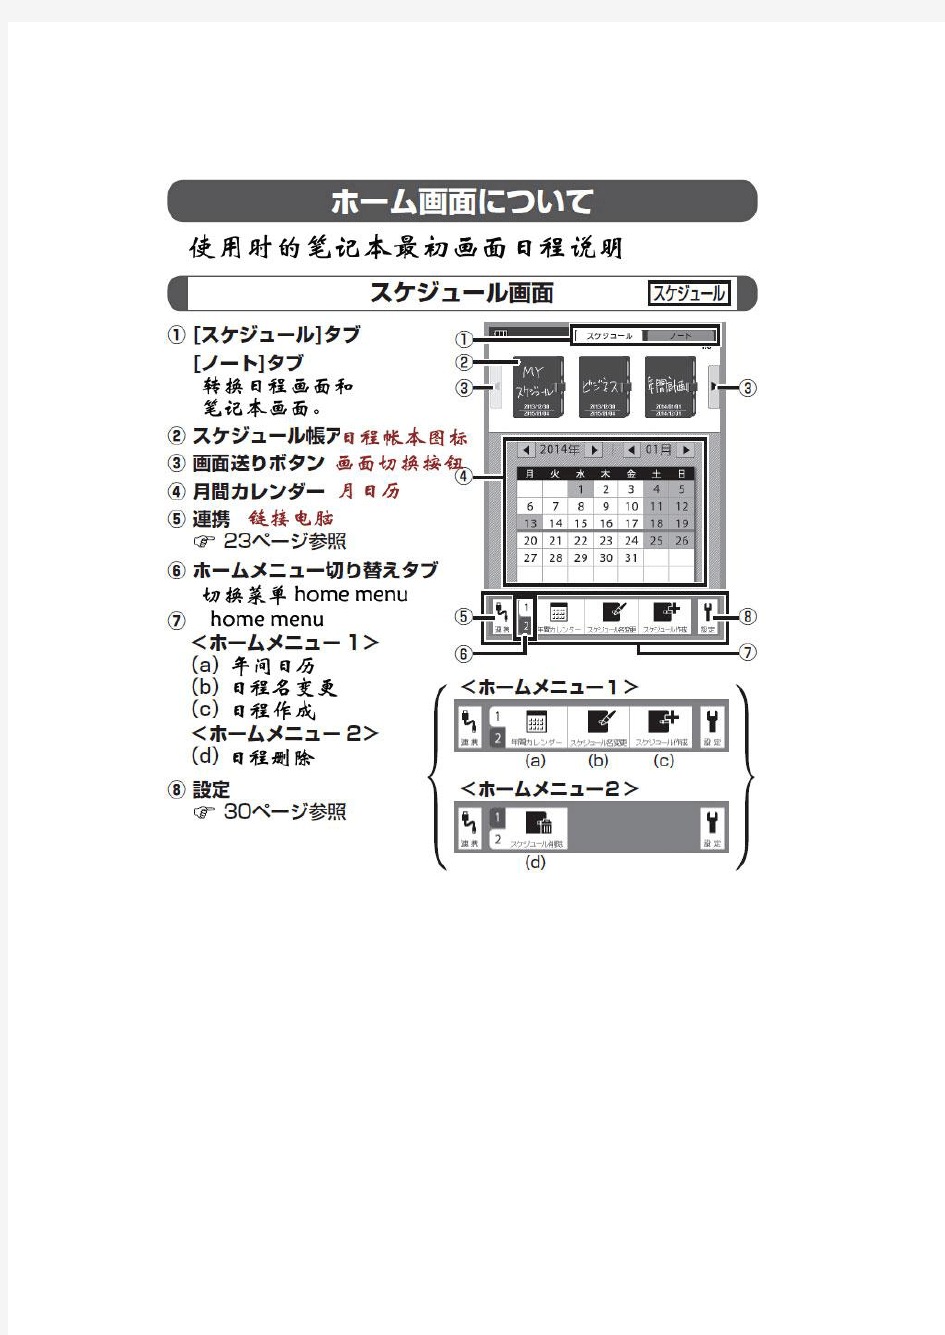 夏普WG-S20电子记事本使用说明书翻译